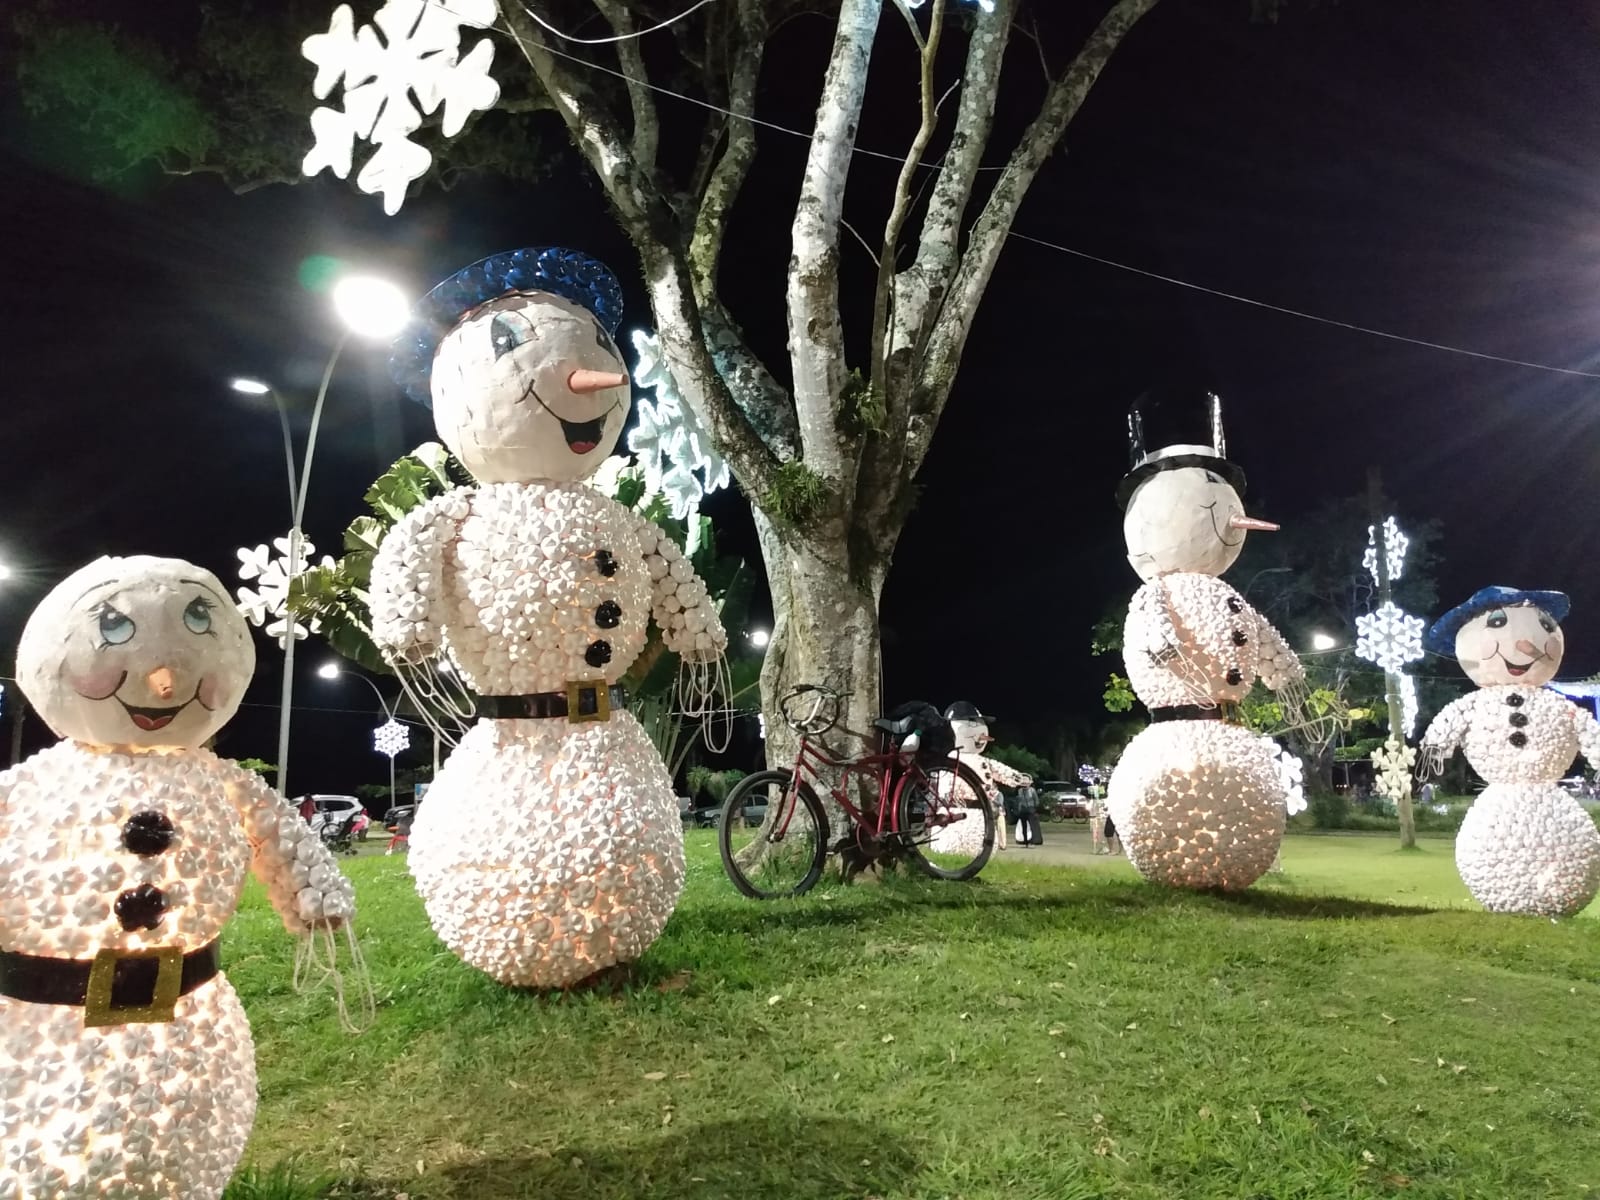 Gastos com decoração natalina em São Sebastião ultrapassaram dois milhões  de reais